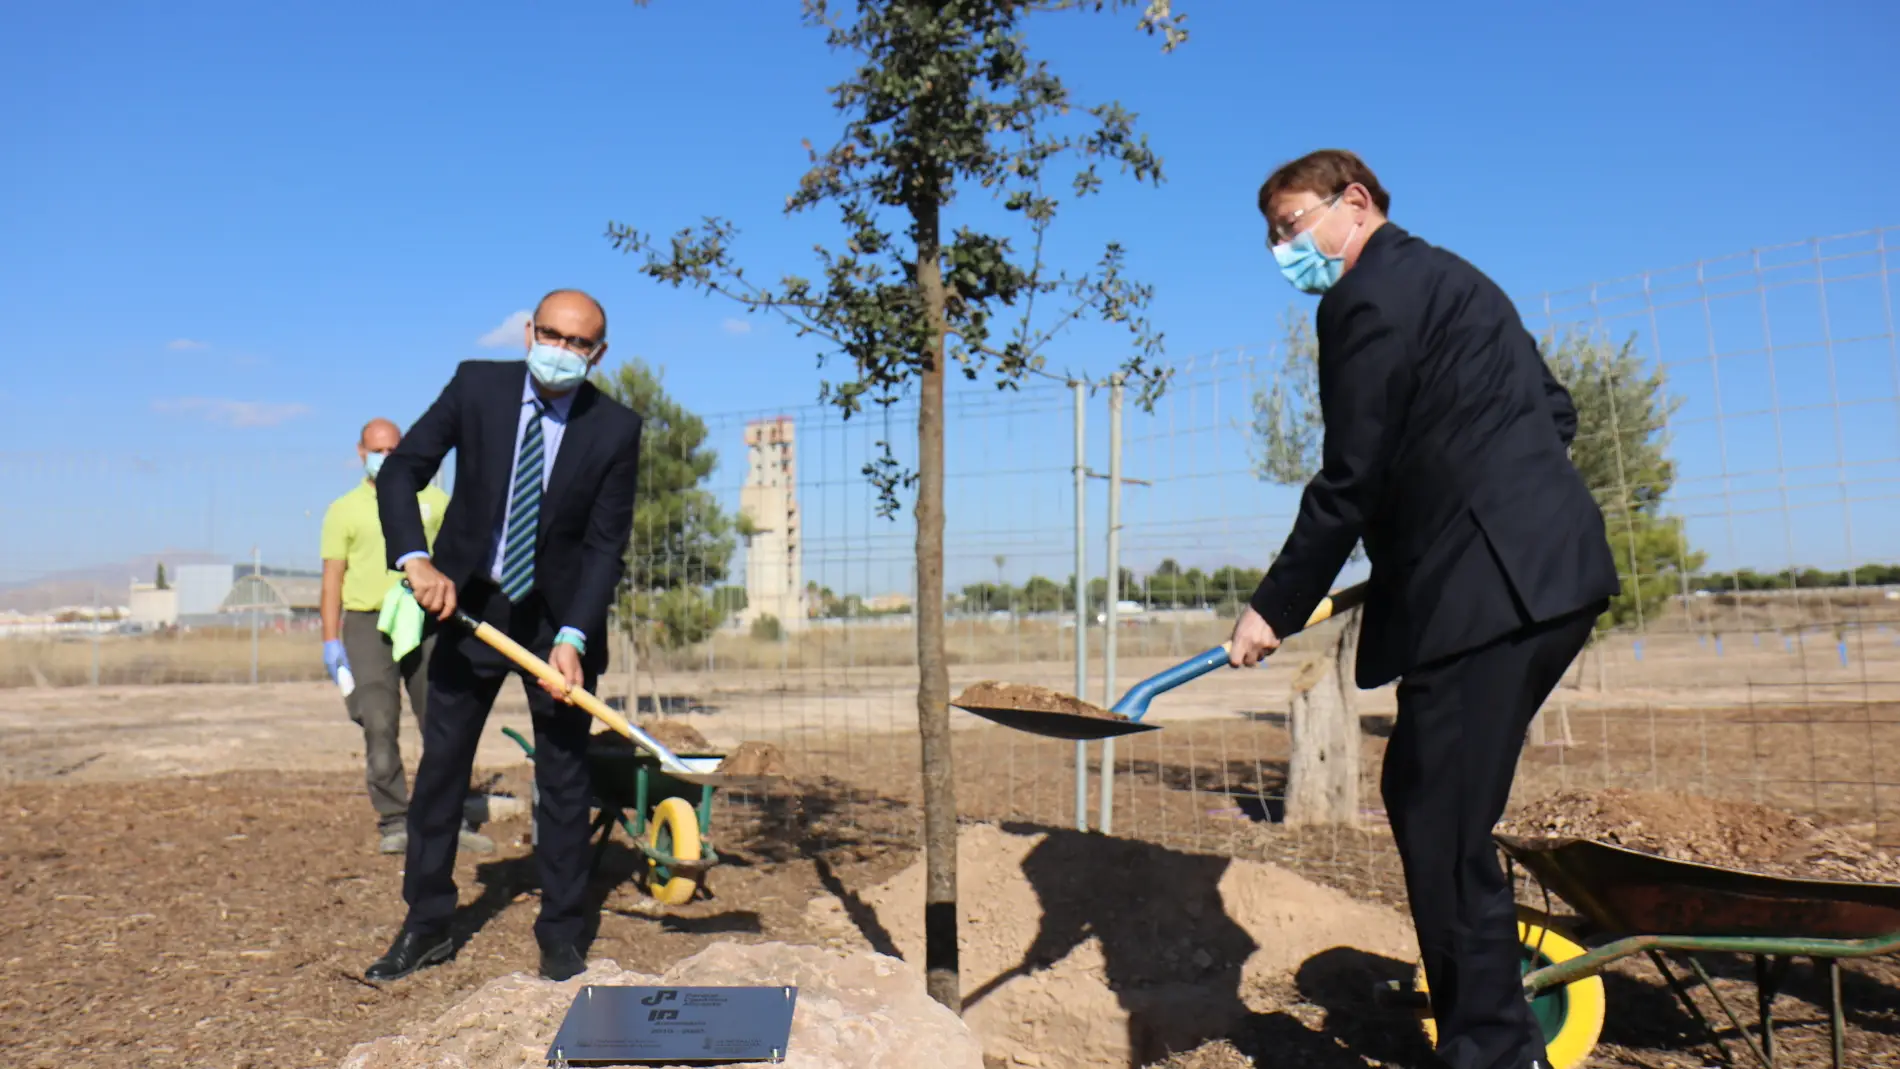 Palomar y Puig plantan un árbol conmemorativo